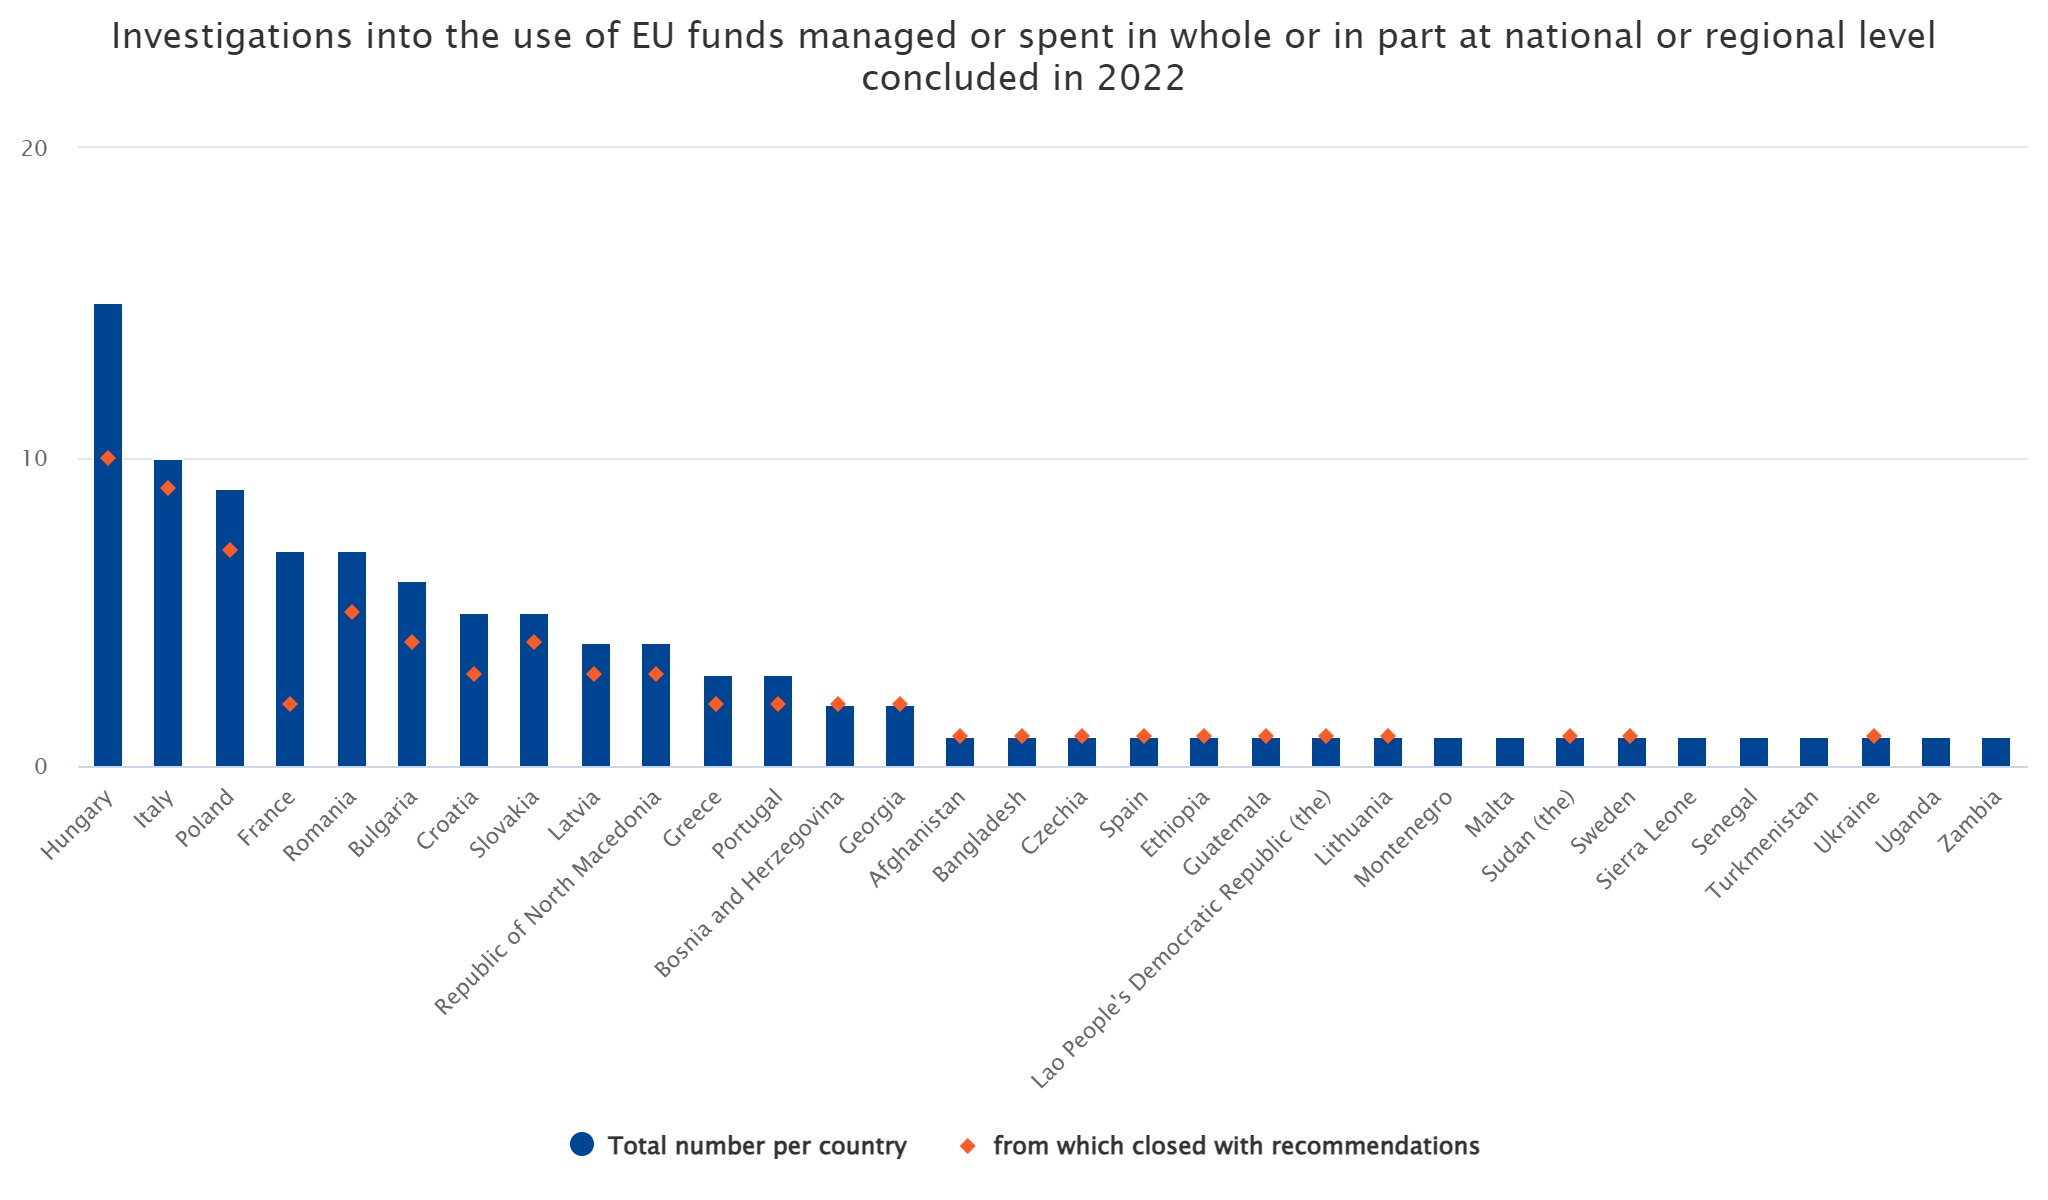 Ranking Olaf Países con más fraudes en la gestión de fondos de la UE